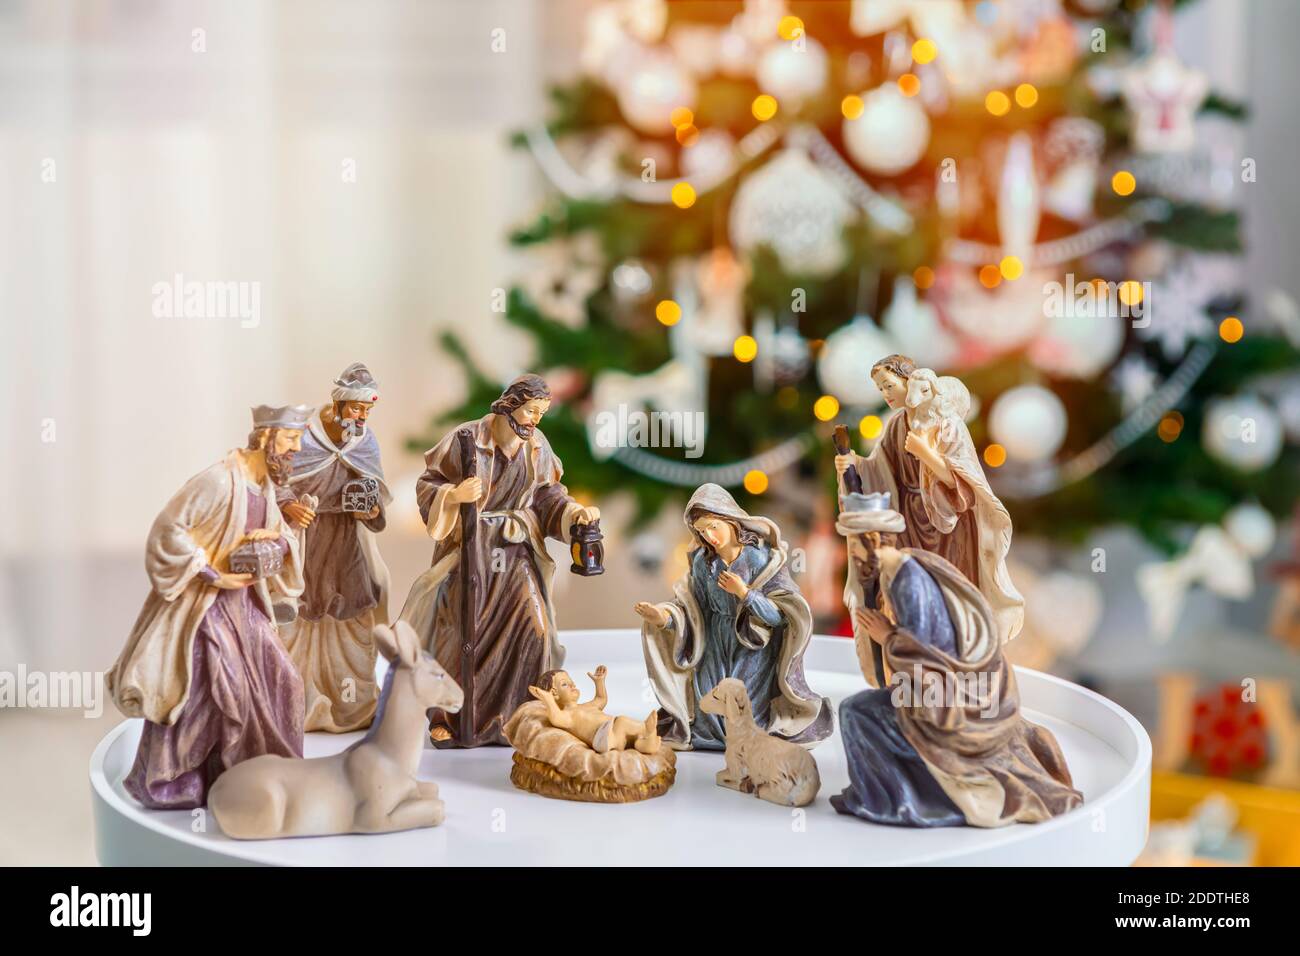 Scena del presepe di Natale con figurine tra cui Gesù, Maria, Giuseppe, pecore e saggi. Focus sulla madre! Foto Stock